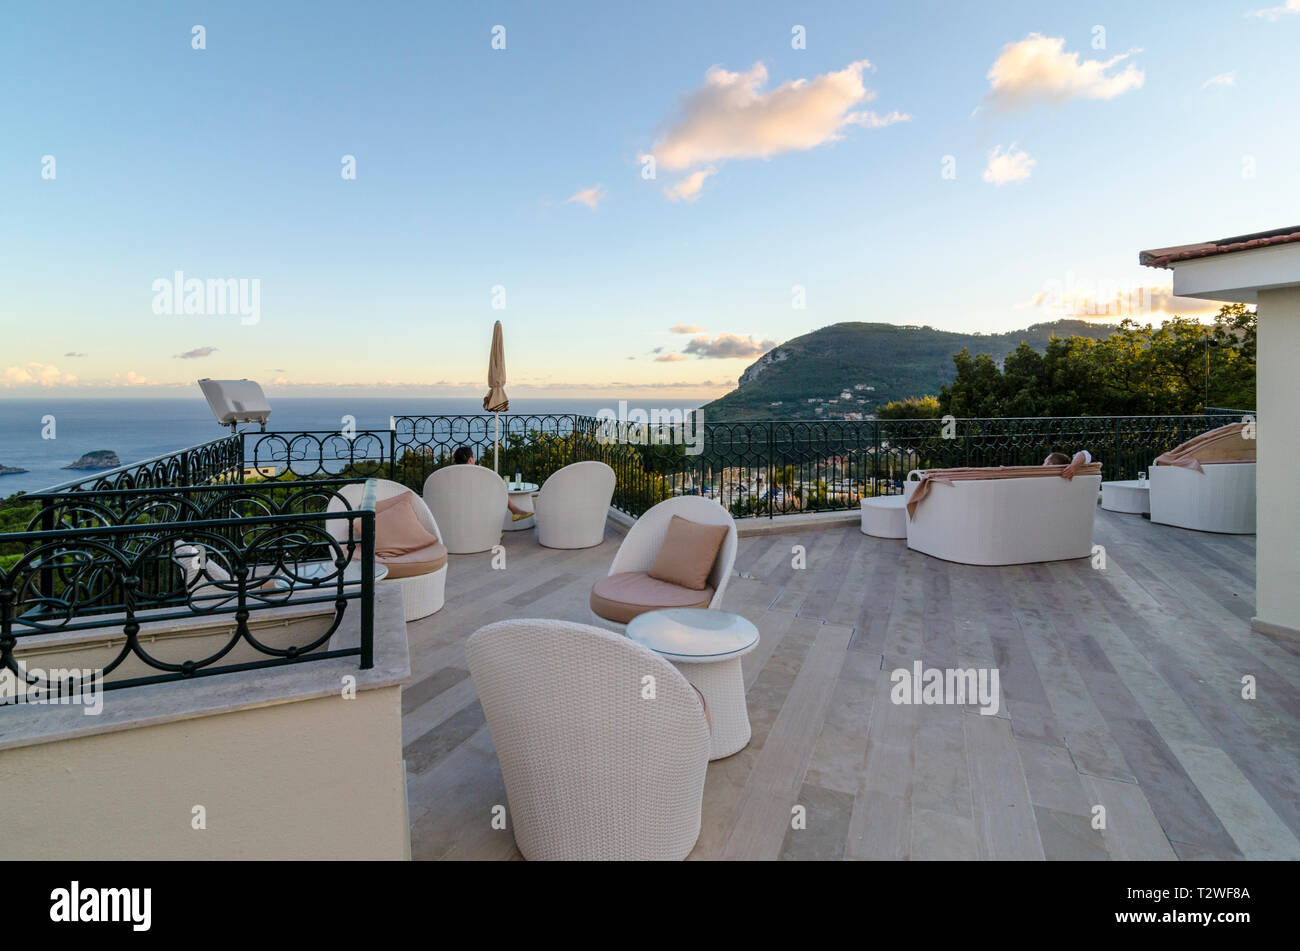 Toit-terrasse de l'hôtel sur une colline avec vue sur la côte amalfitaine entre Sorrente et Positano, Italie Banque D'Images